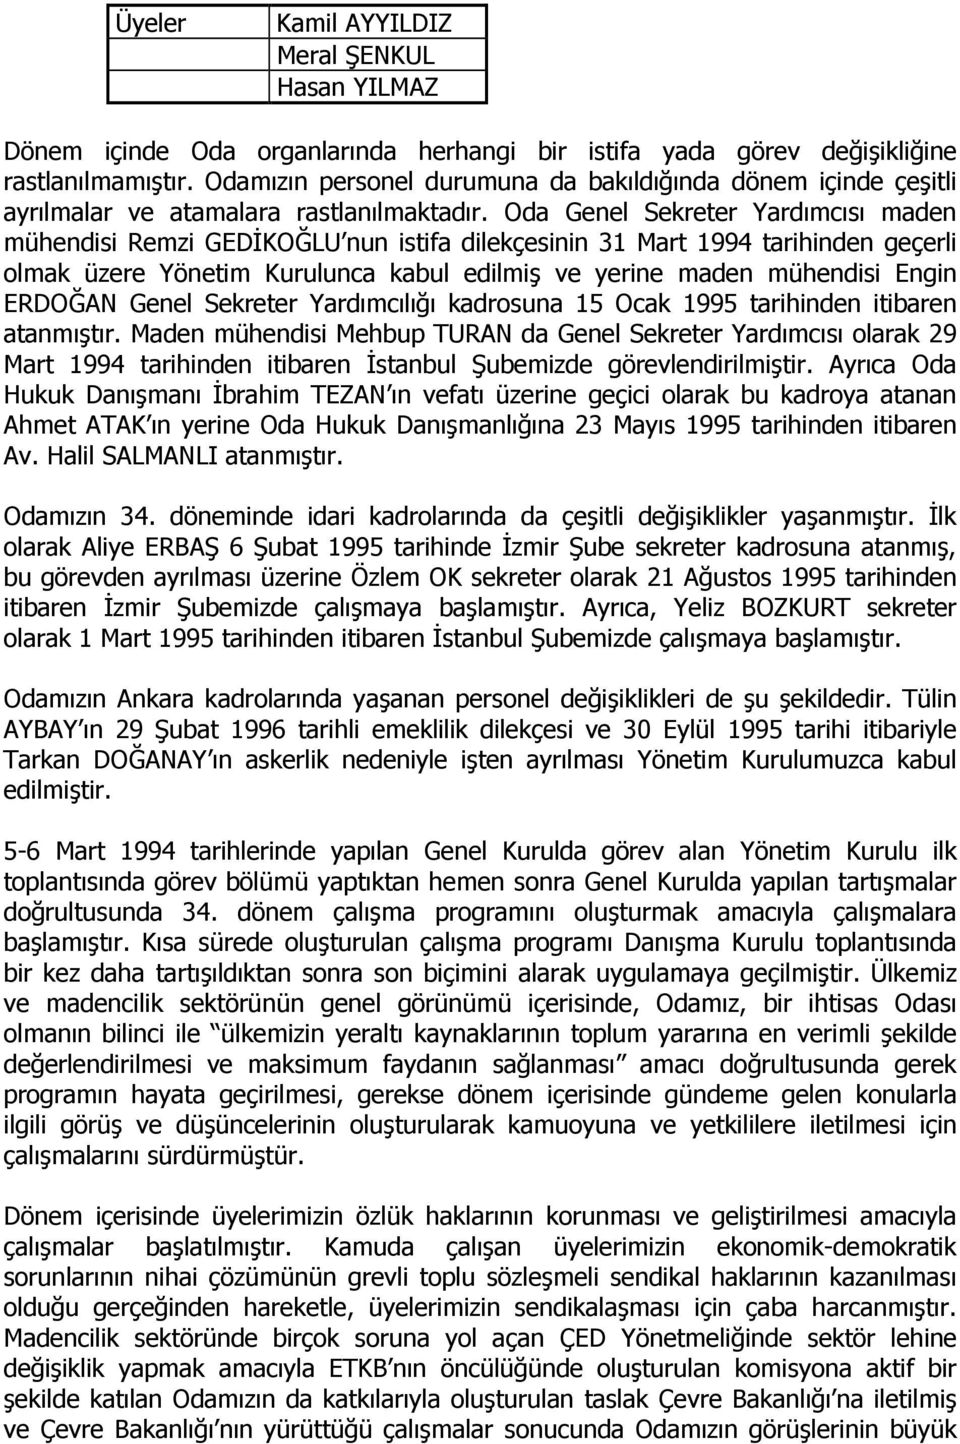 Oda Genel Sekreter Yardımcısı maden mühendisi Remzi GEDĐKOĞLU nun istifa dilekçesinin 31 Mart 1994 tarihinden geçerli olmak üzere Yönetim Kurulunca kabul edilmiş ve yerine maden mühendisi Engin